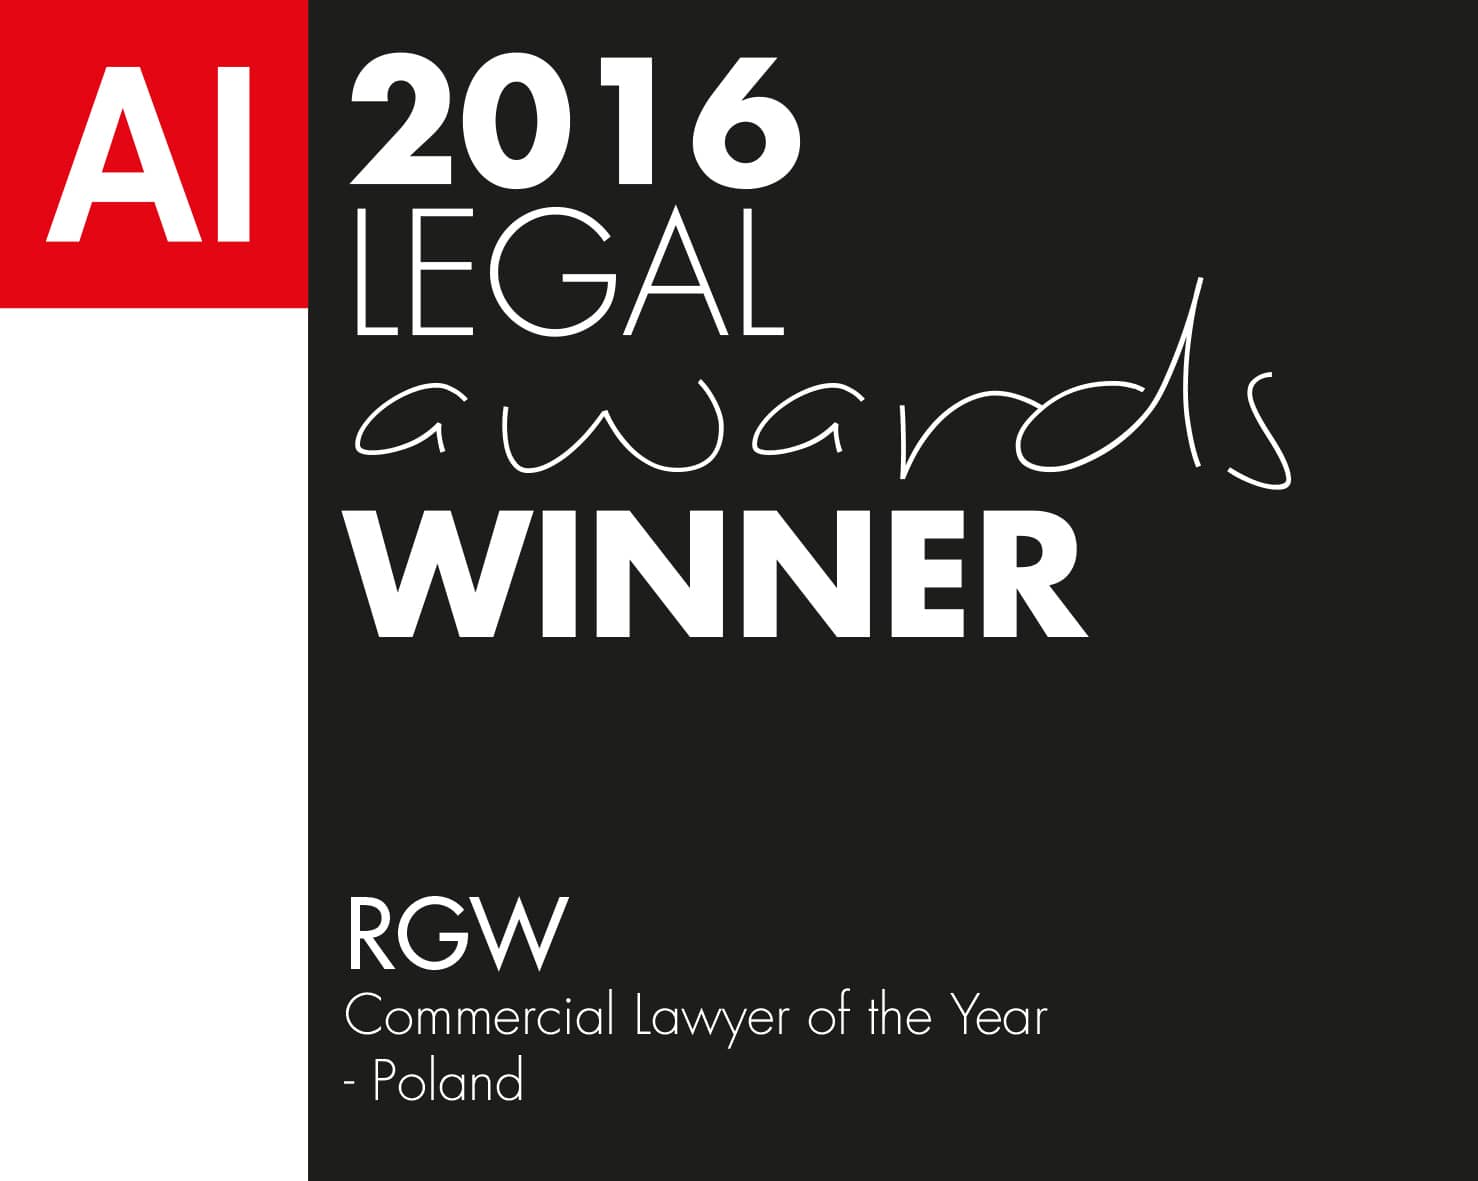 Das Magazin Acquisition International verkündete die Legal Awards 2016 Gewinner